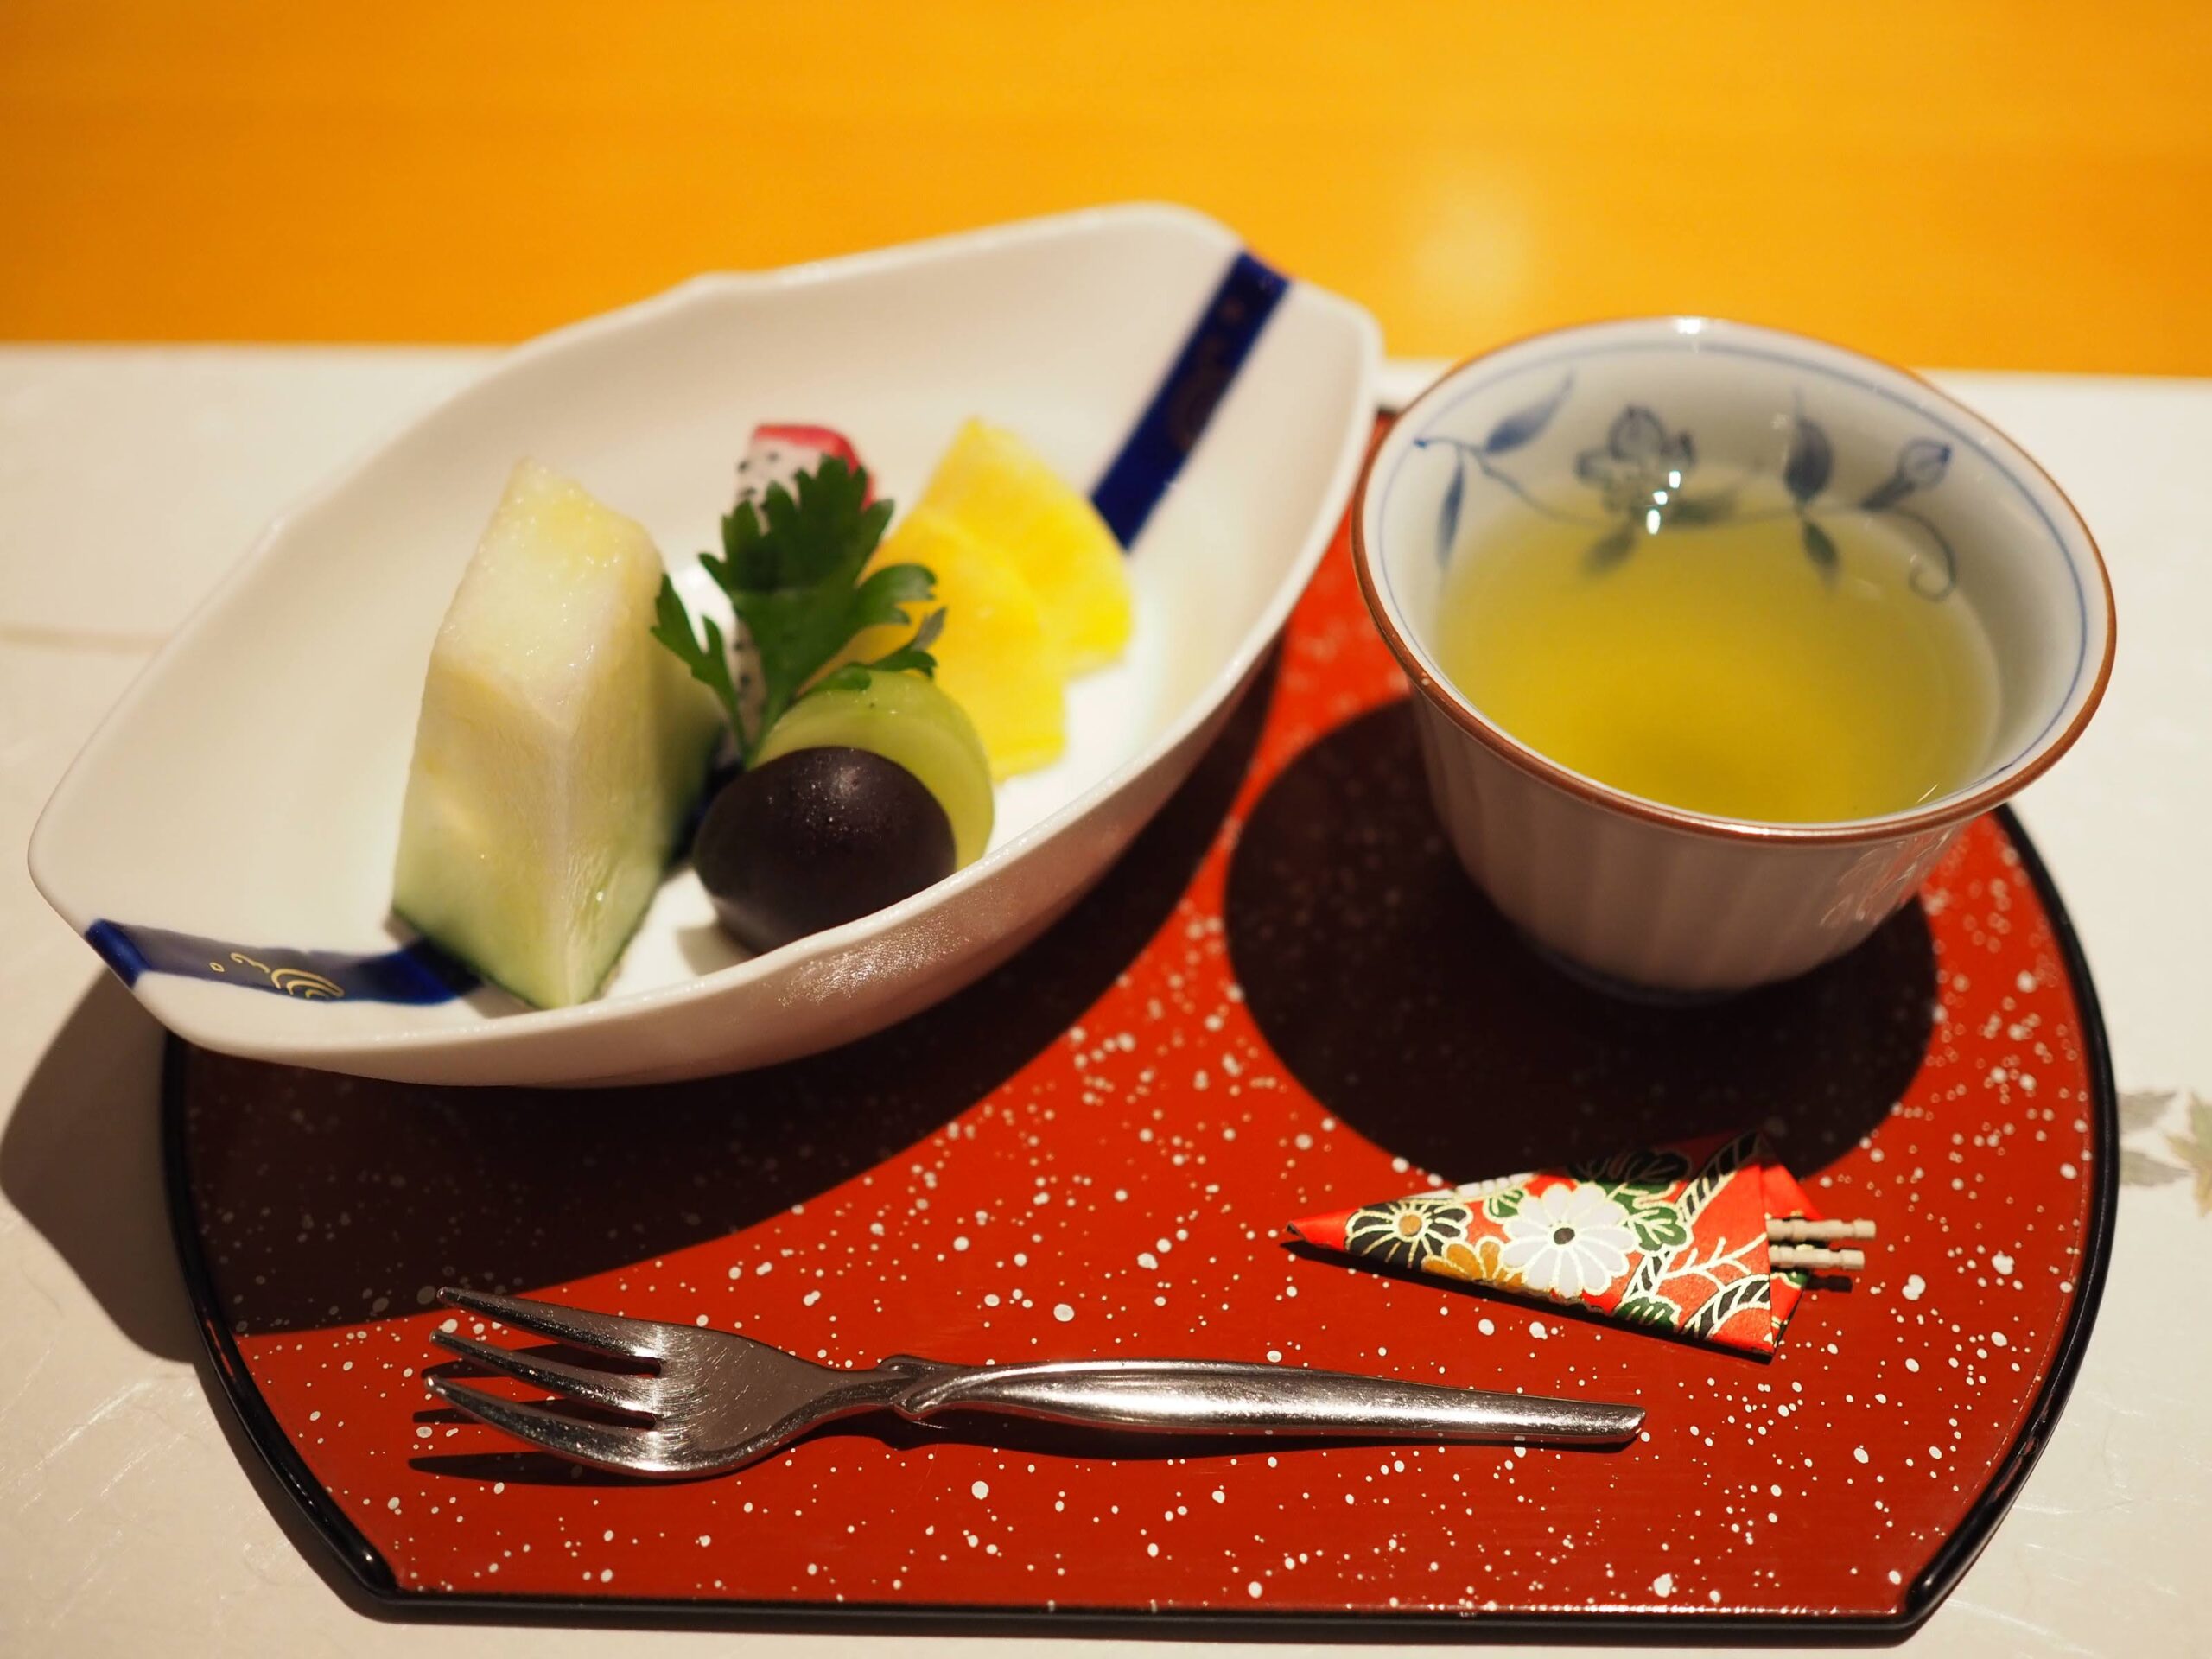 静岡県熱海市 HOTEL ACAO ホテルニューアカオ レストラン 舞扇 夕食メニュー 水菓子